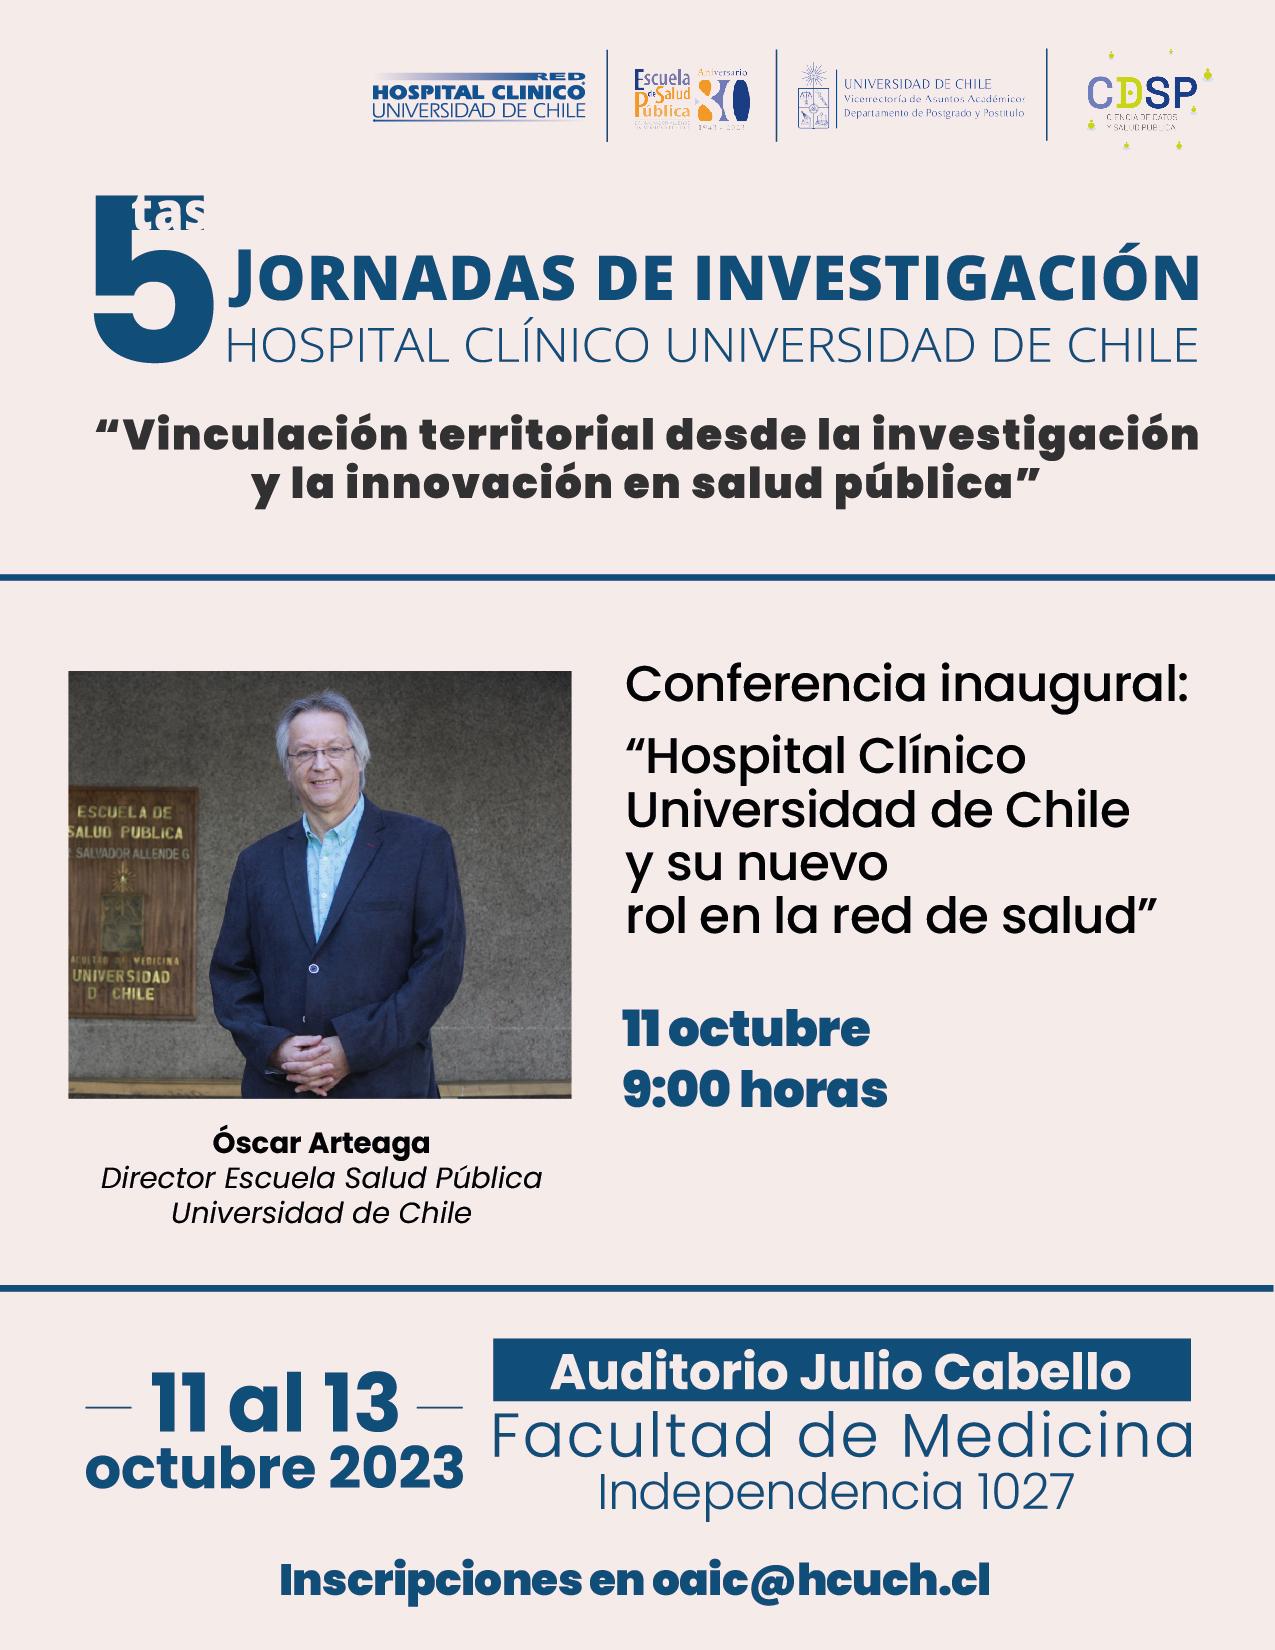 5tas Jornadas de Investigación Hospital Clínico Universidad de Chile 